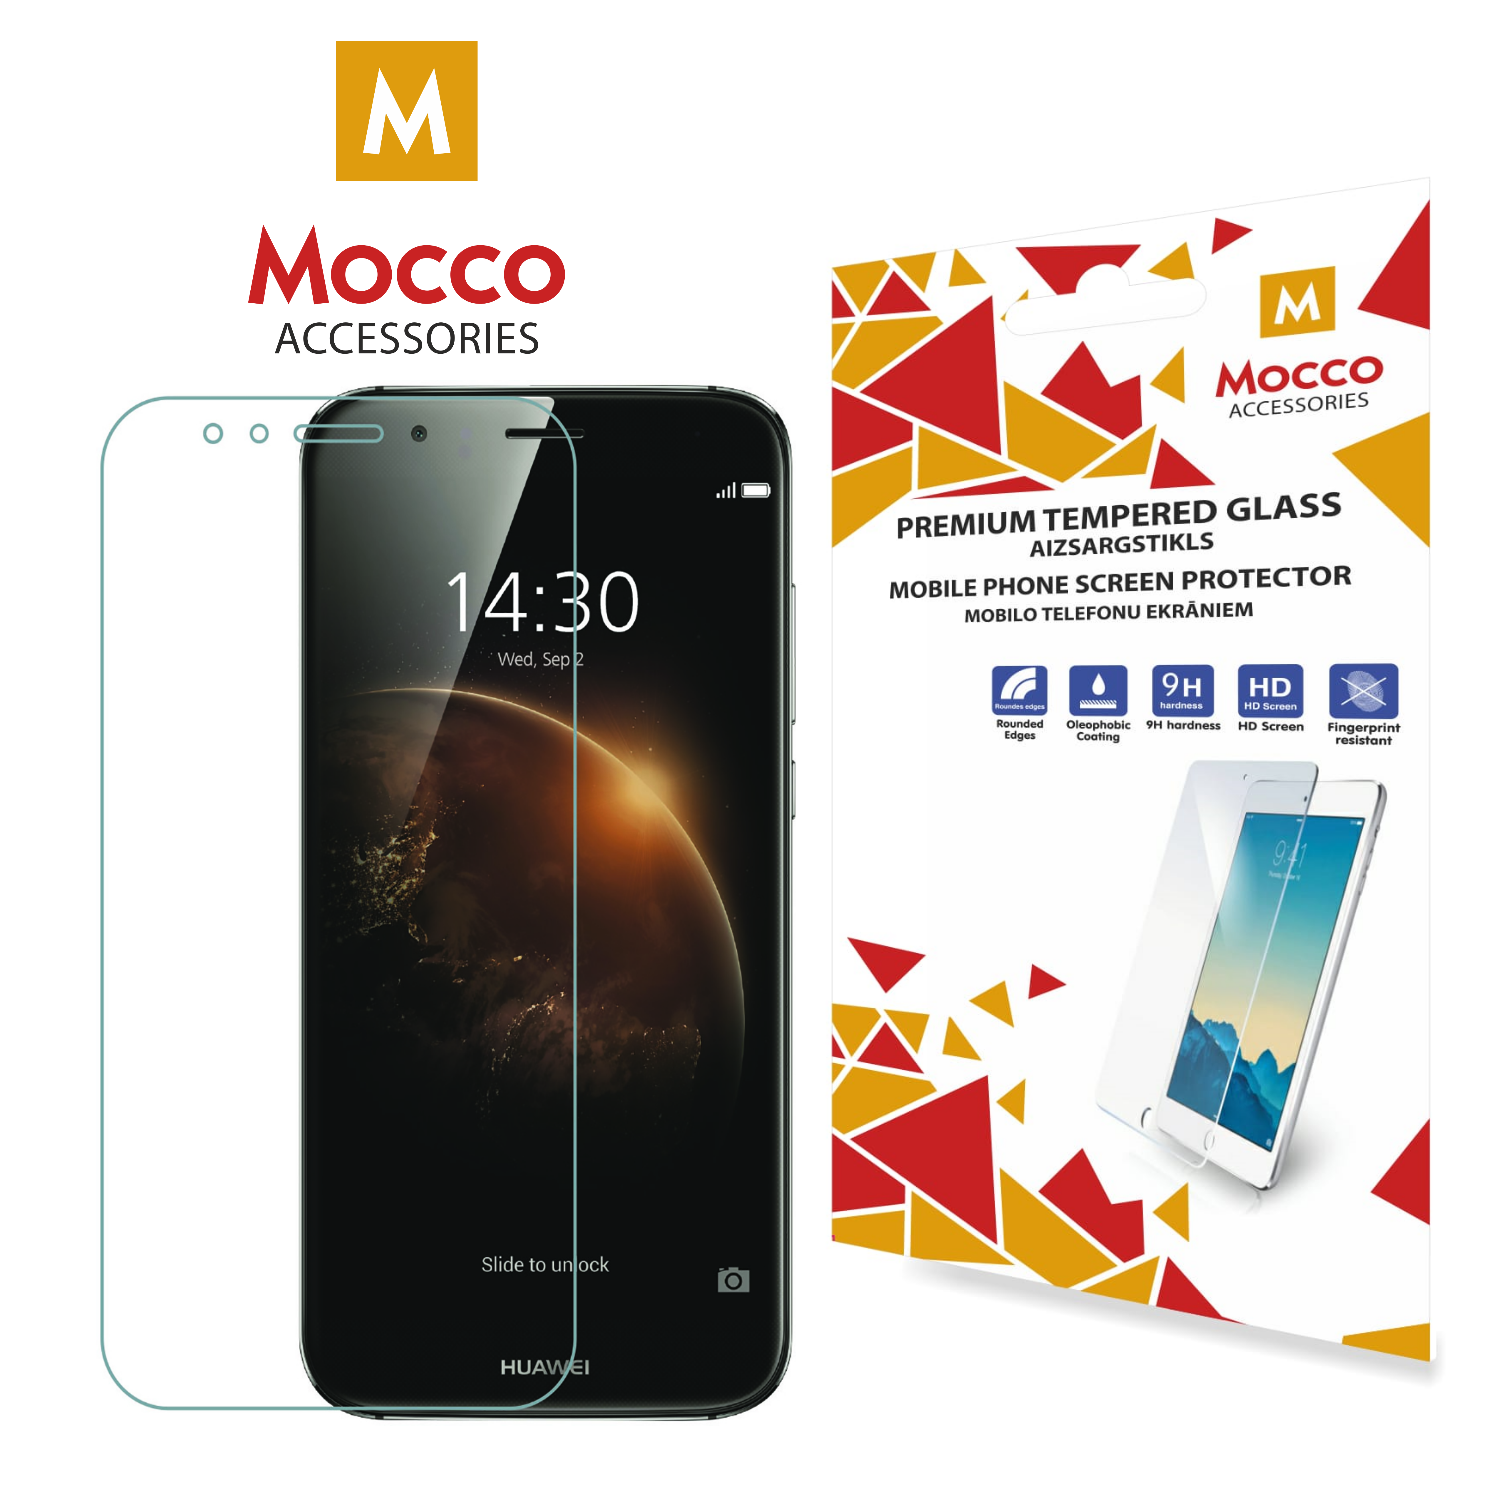 Mocco Tempered Glass  Aizsargstikls Huawei P10 Lite aizsardzība ekrānam mobilajiem telefoniem